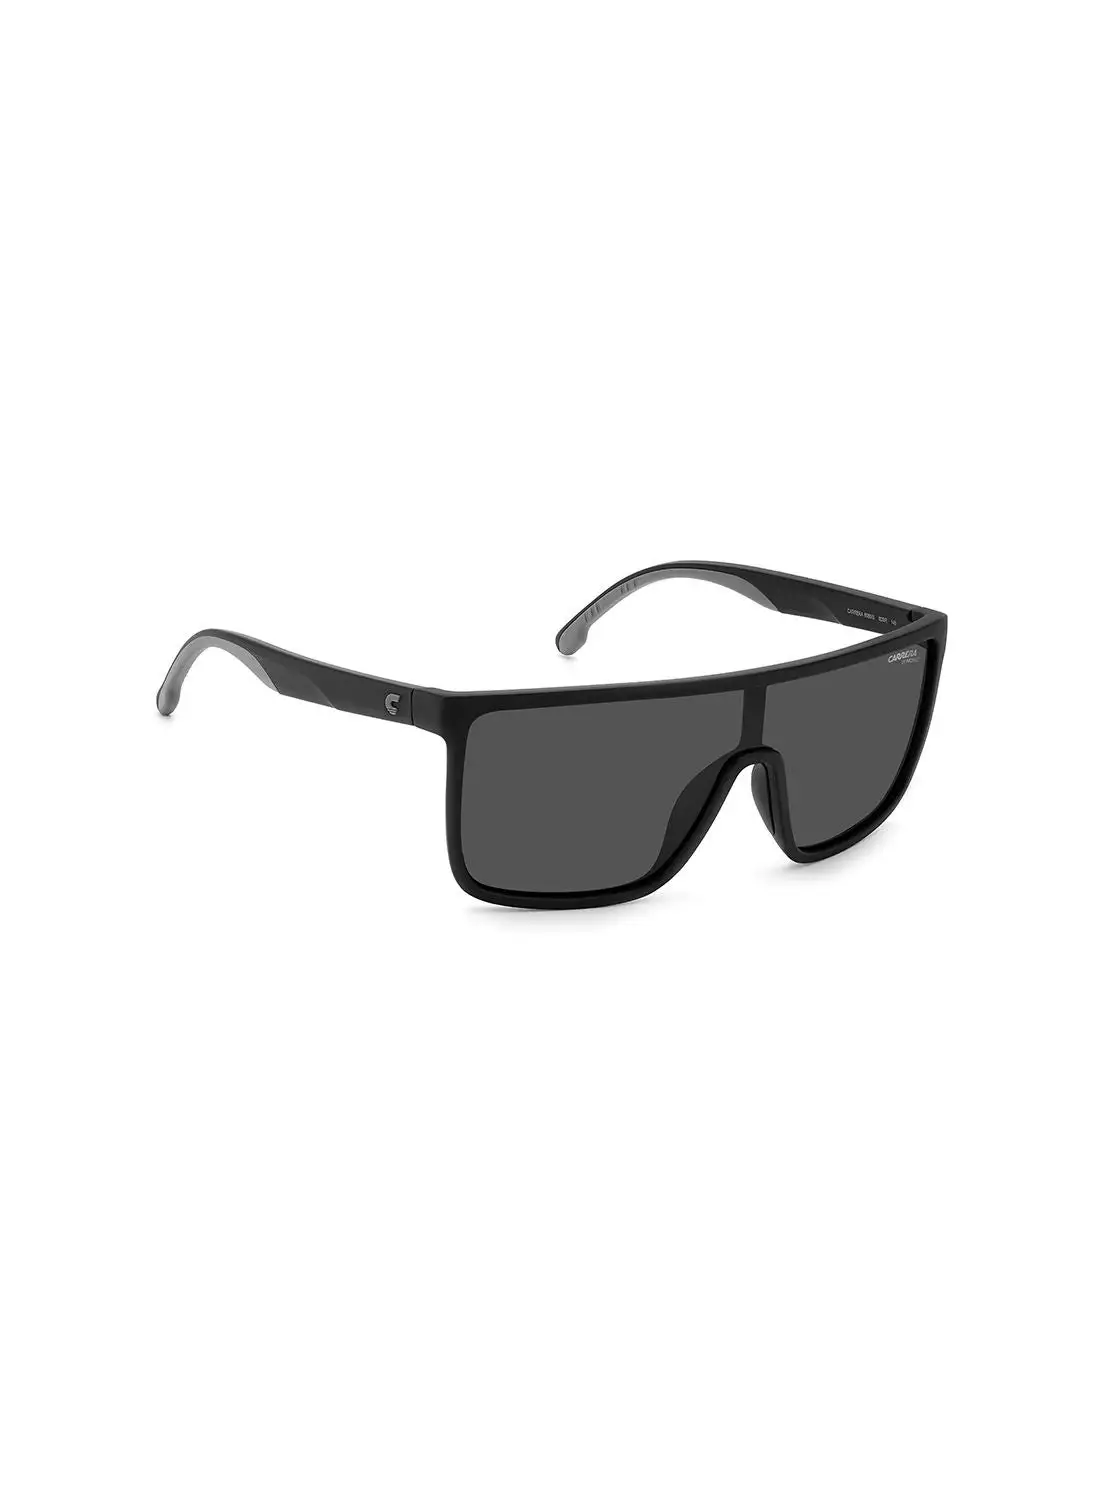 نظارة كاريرا للجنسين للحماية من الأشعة فوق البنفسجية - Carrera 8060/S أسود مطفي 99 - مقاس العدسة: 99 ملم